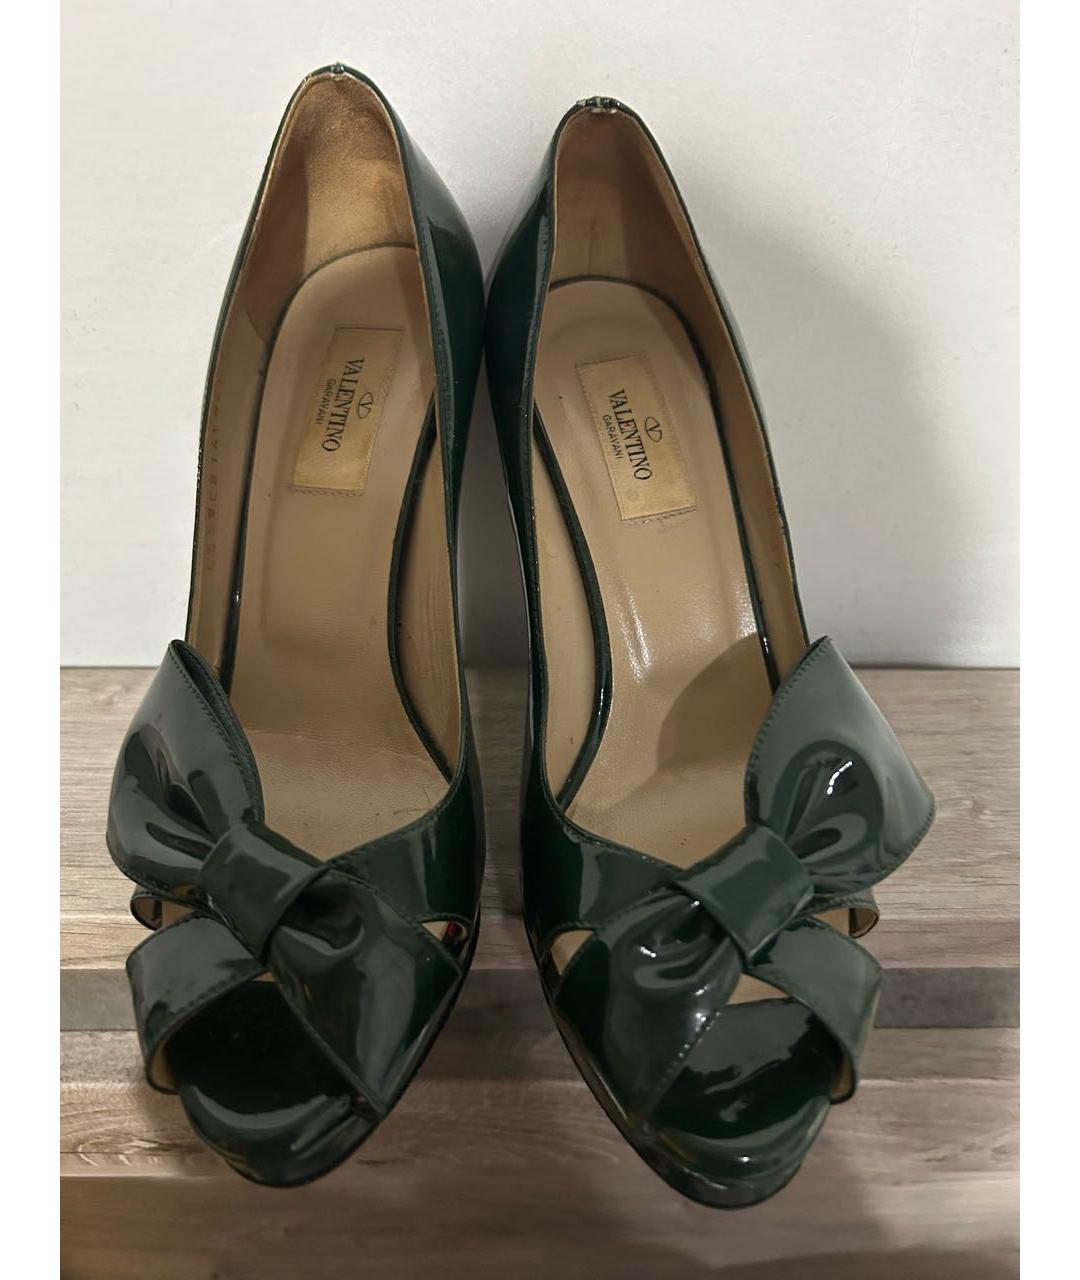 VALENTINO Зеленые туфли из лакированной кожи, фото 2